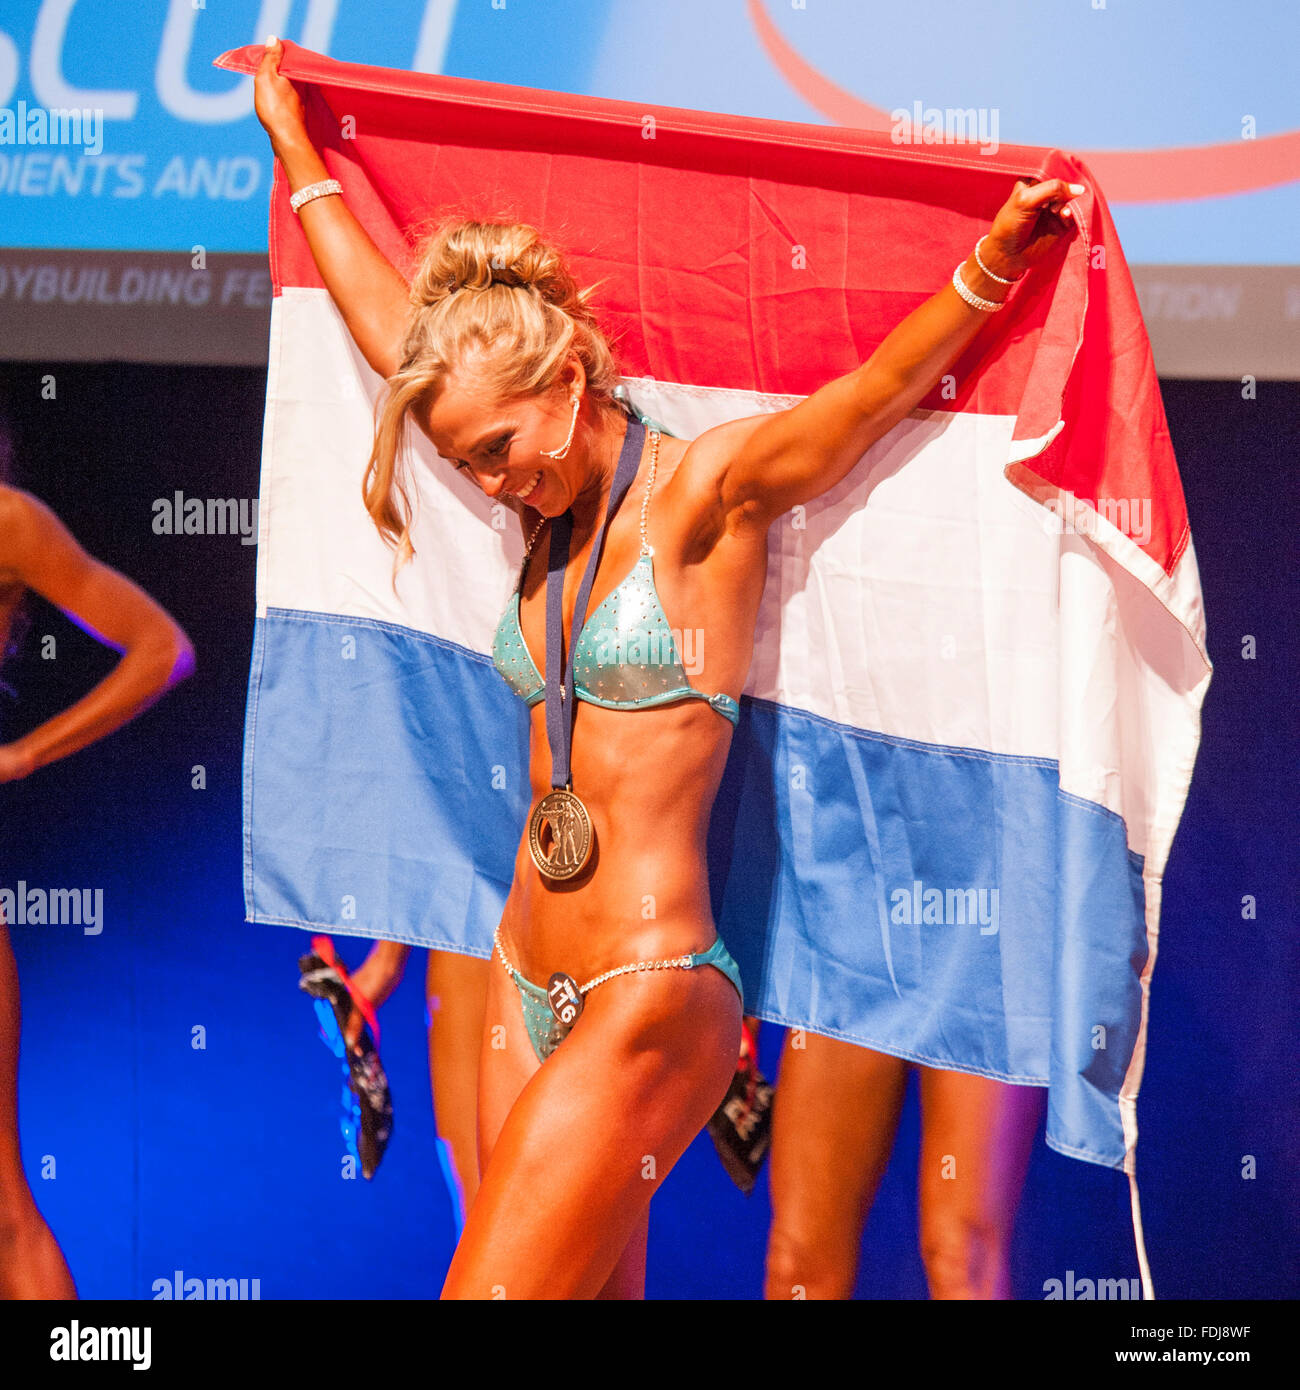 MAASTRICHT, THE NETHERLANDS - OCTOBER 25, 2015: Female figure model Larissa van Meerten celebrates her victory Stock Photo